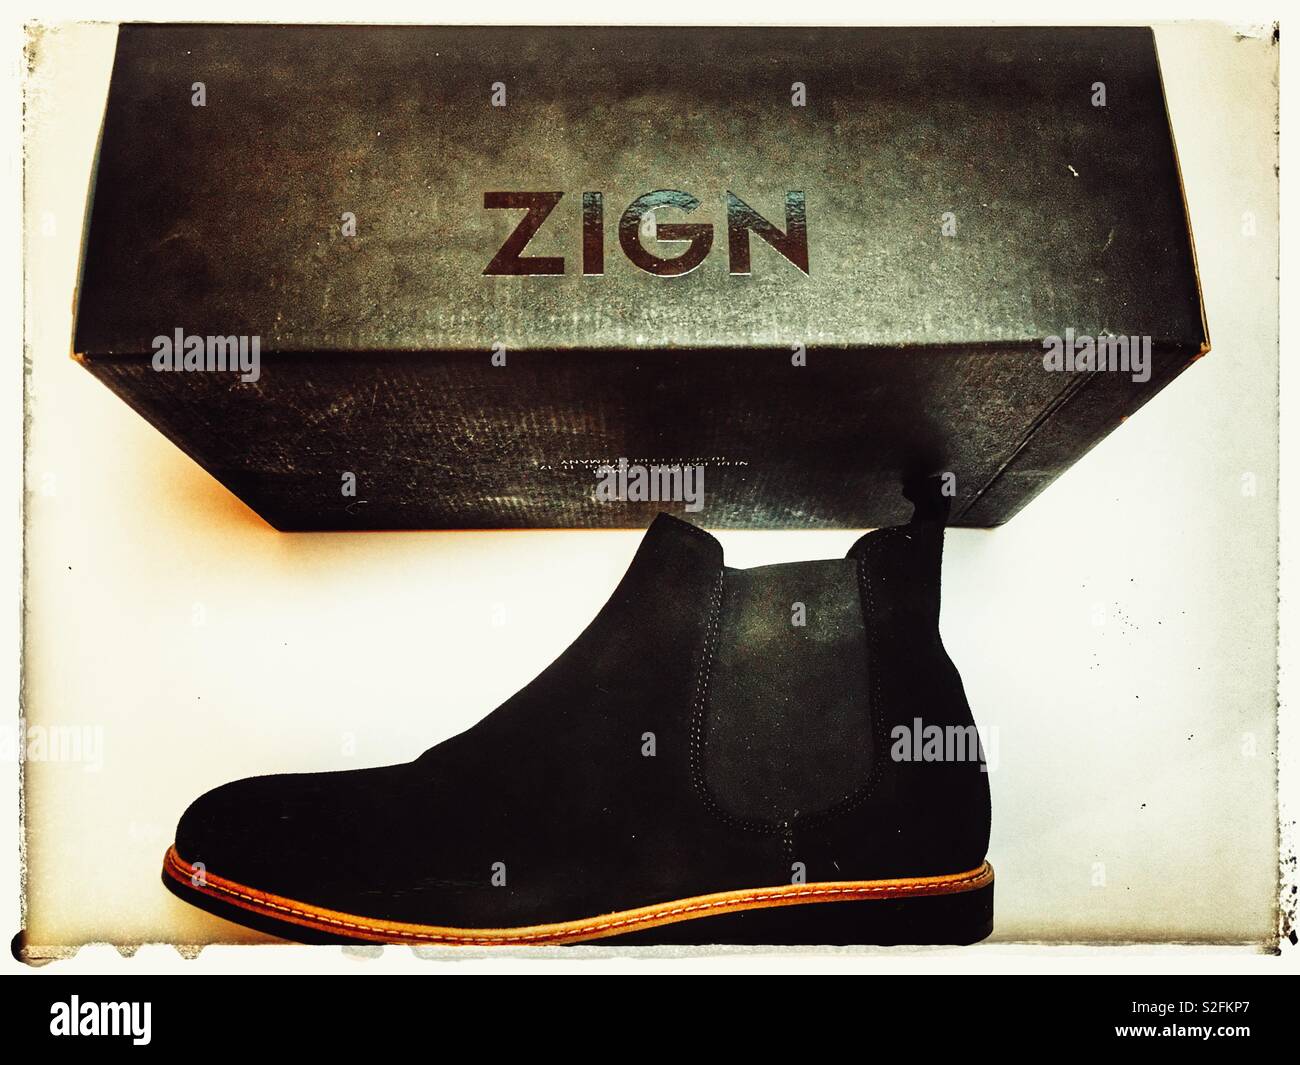 Zign scarpe da uomo Foto stock - Alamy